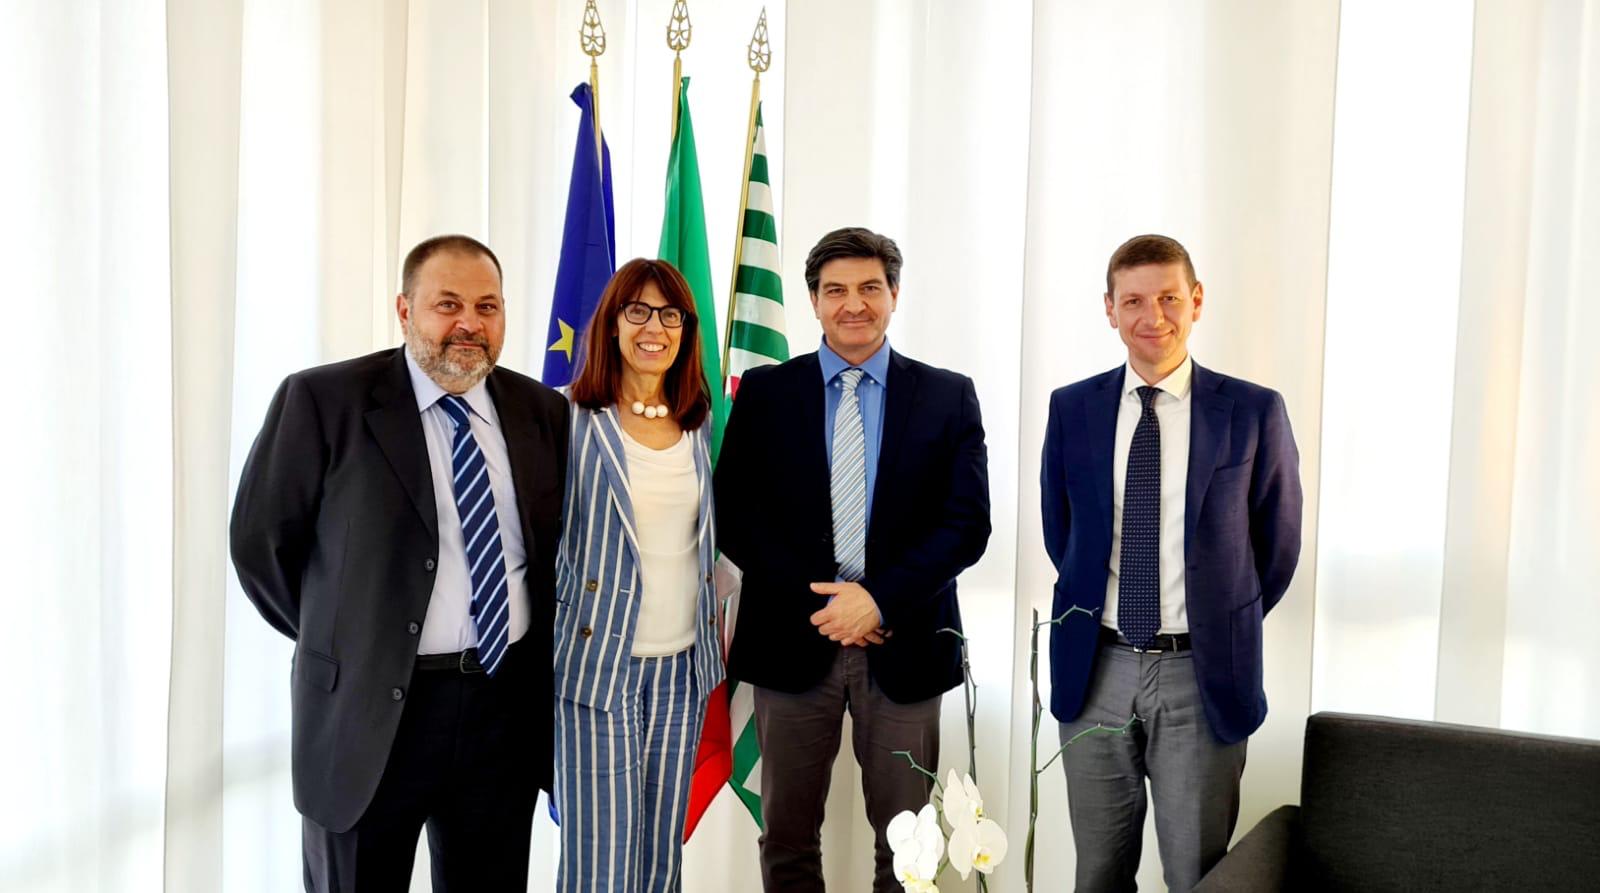 Segreteria Regionale SINAFI Lazio:Stipulata importante convenzione per gli iscritti con la Società di servizi CAF Cisl Lazio